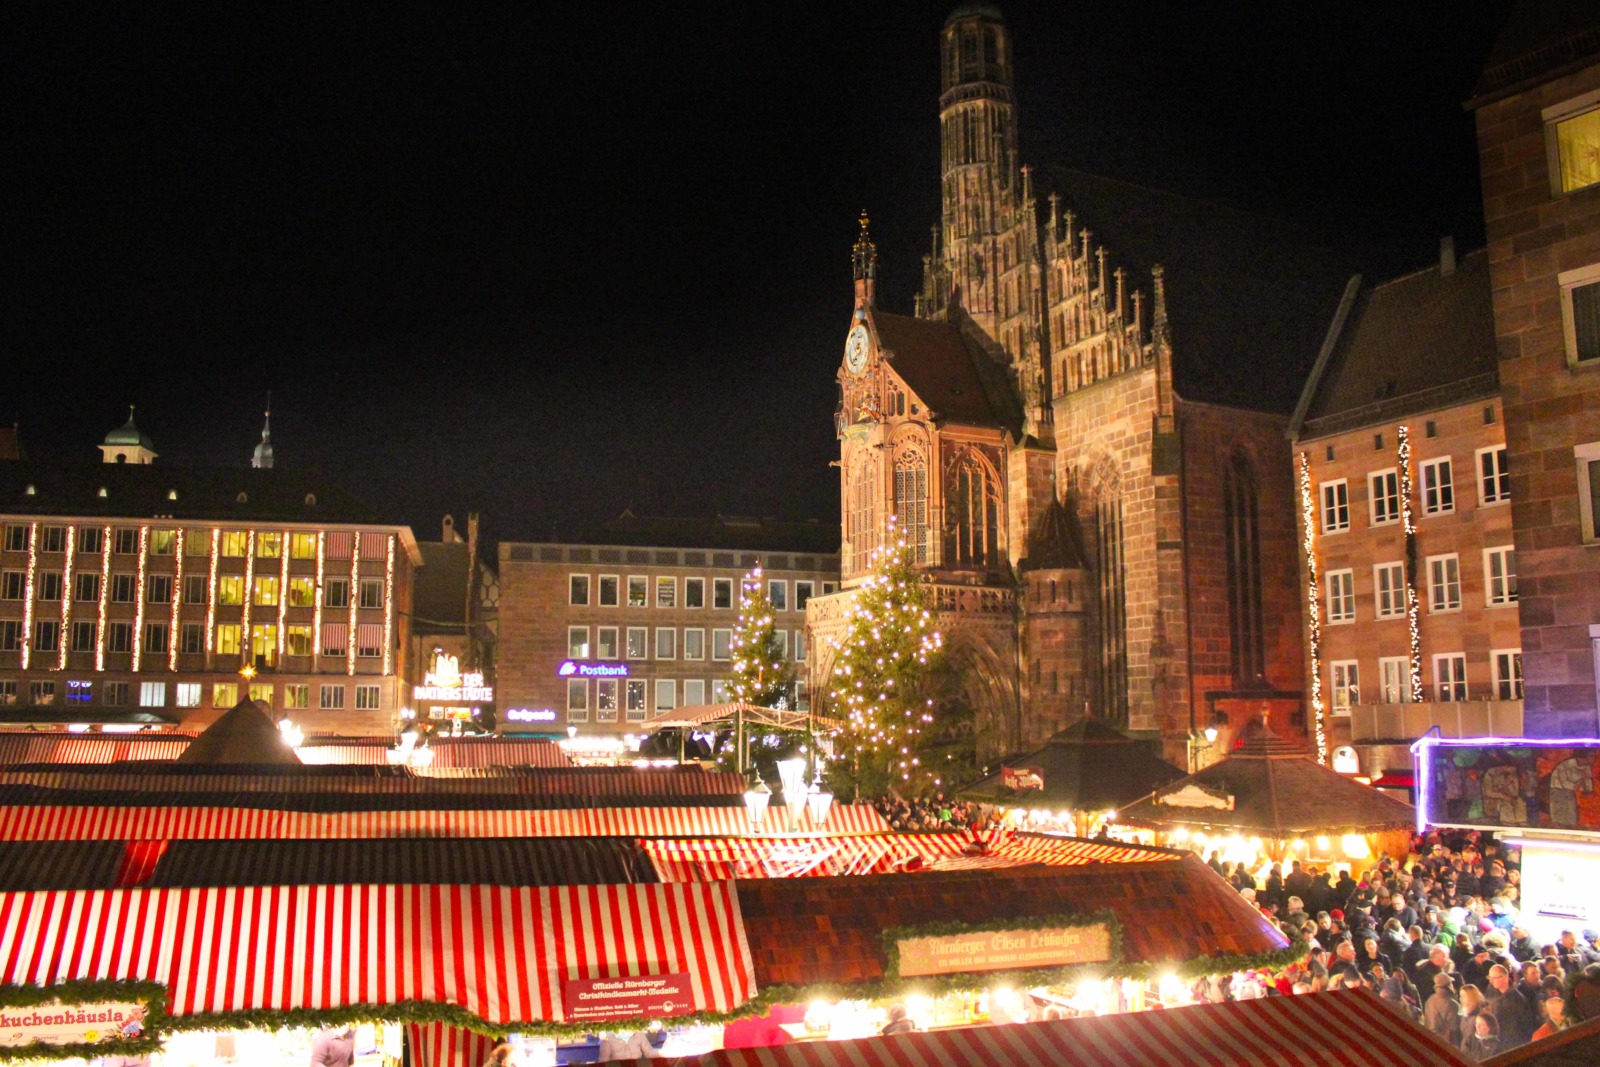 Nuremberg Christmas Market by reinasierra via Twenty20